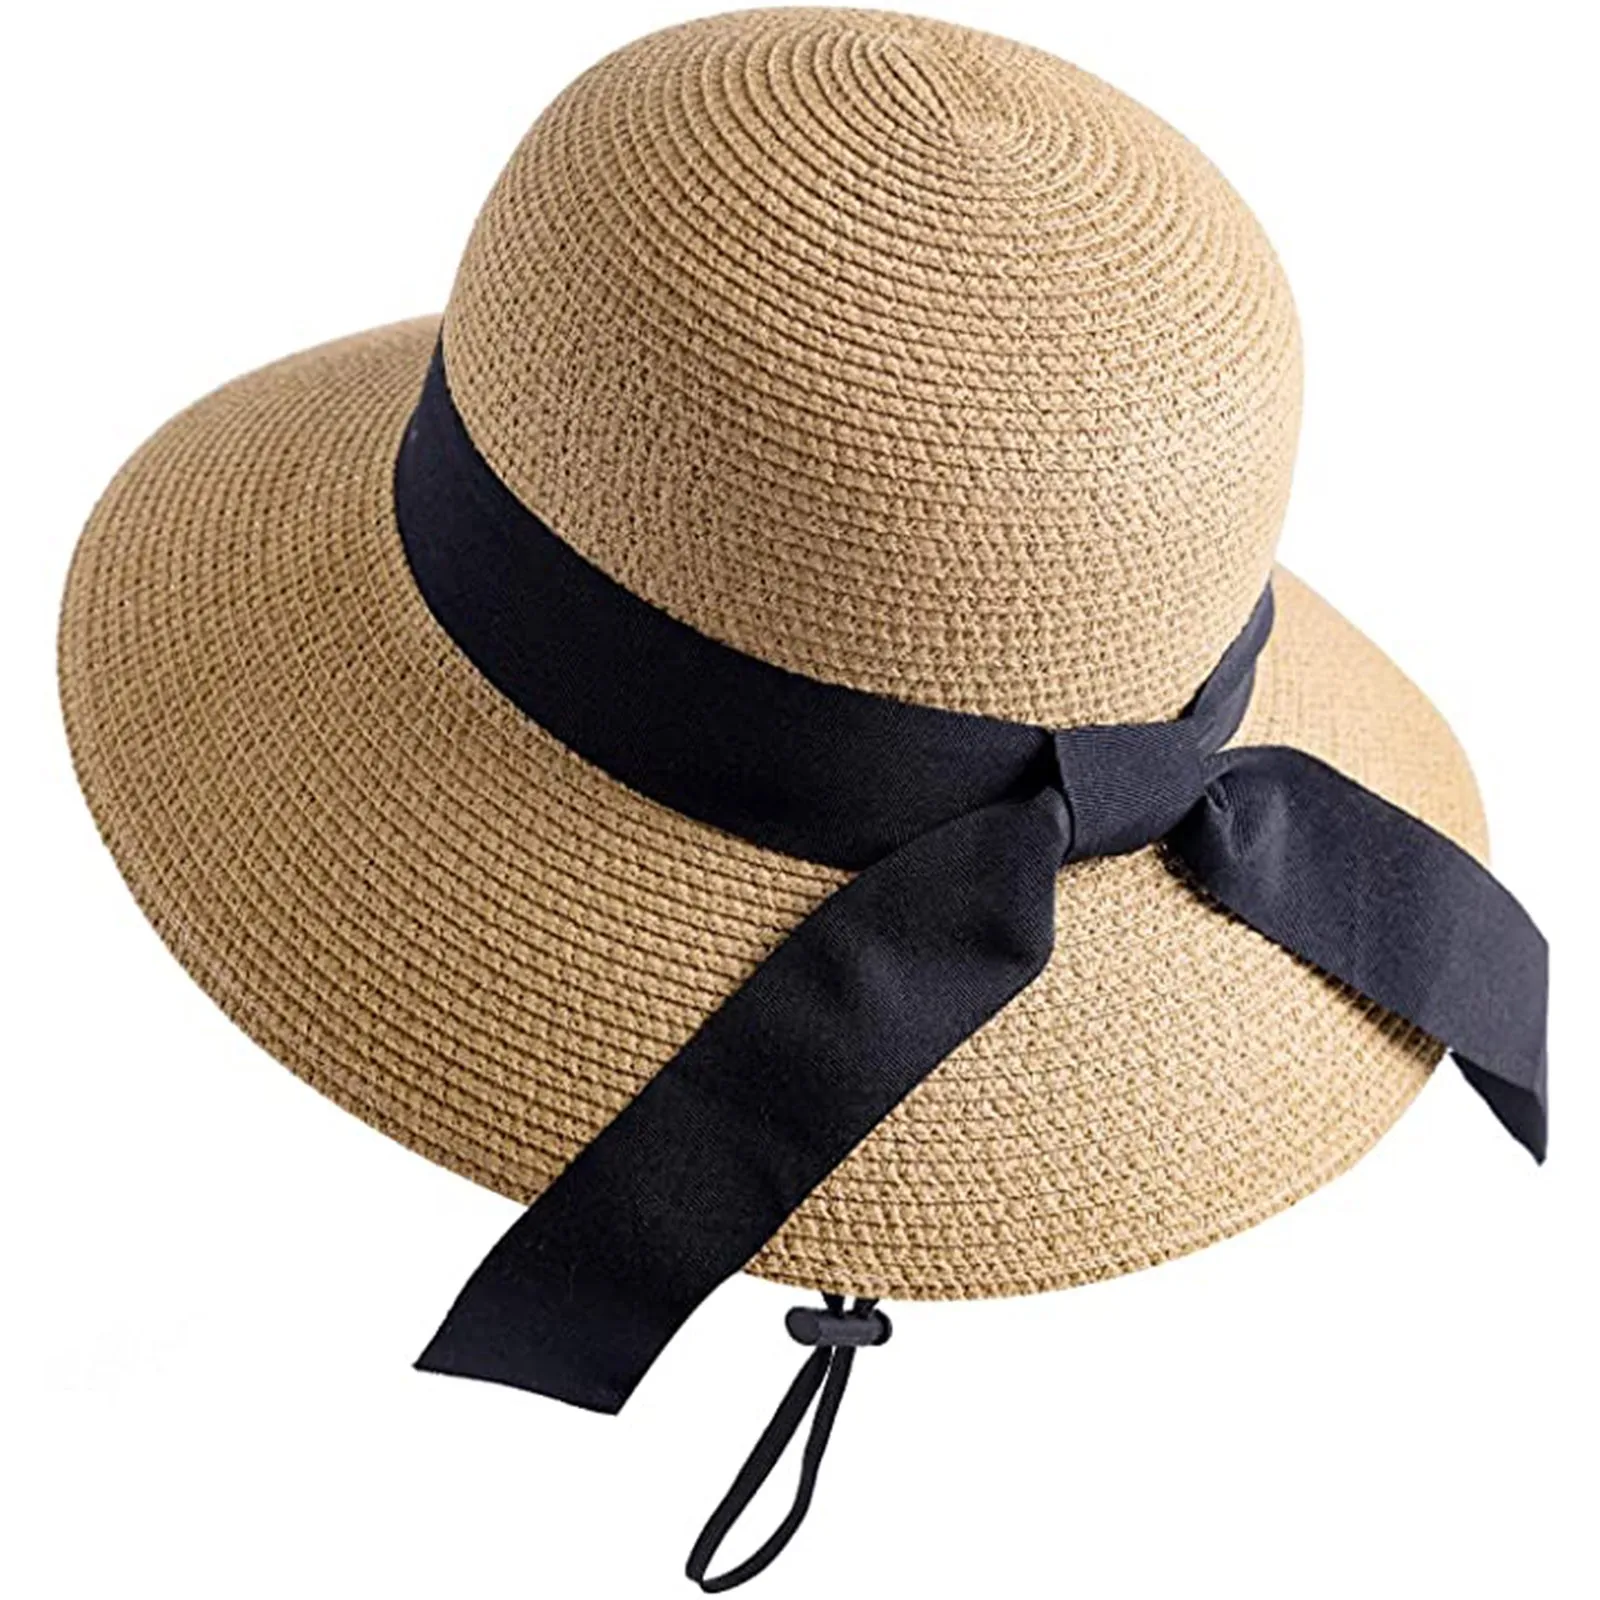 Sombrero de Playa Fedora protección Solar de Verano Magracy Sombrero de Paja para niños Plegable 